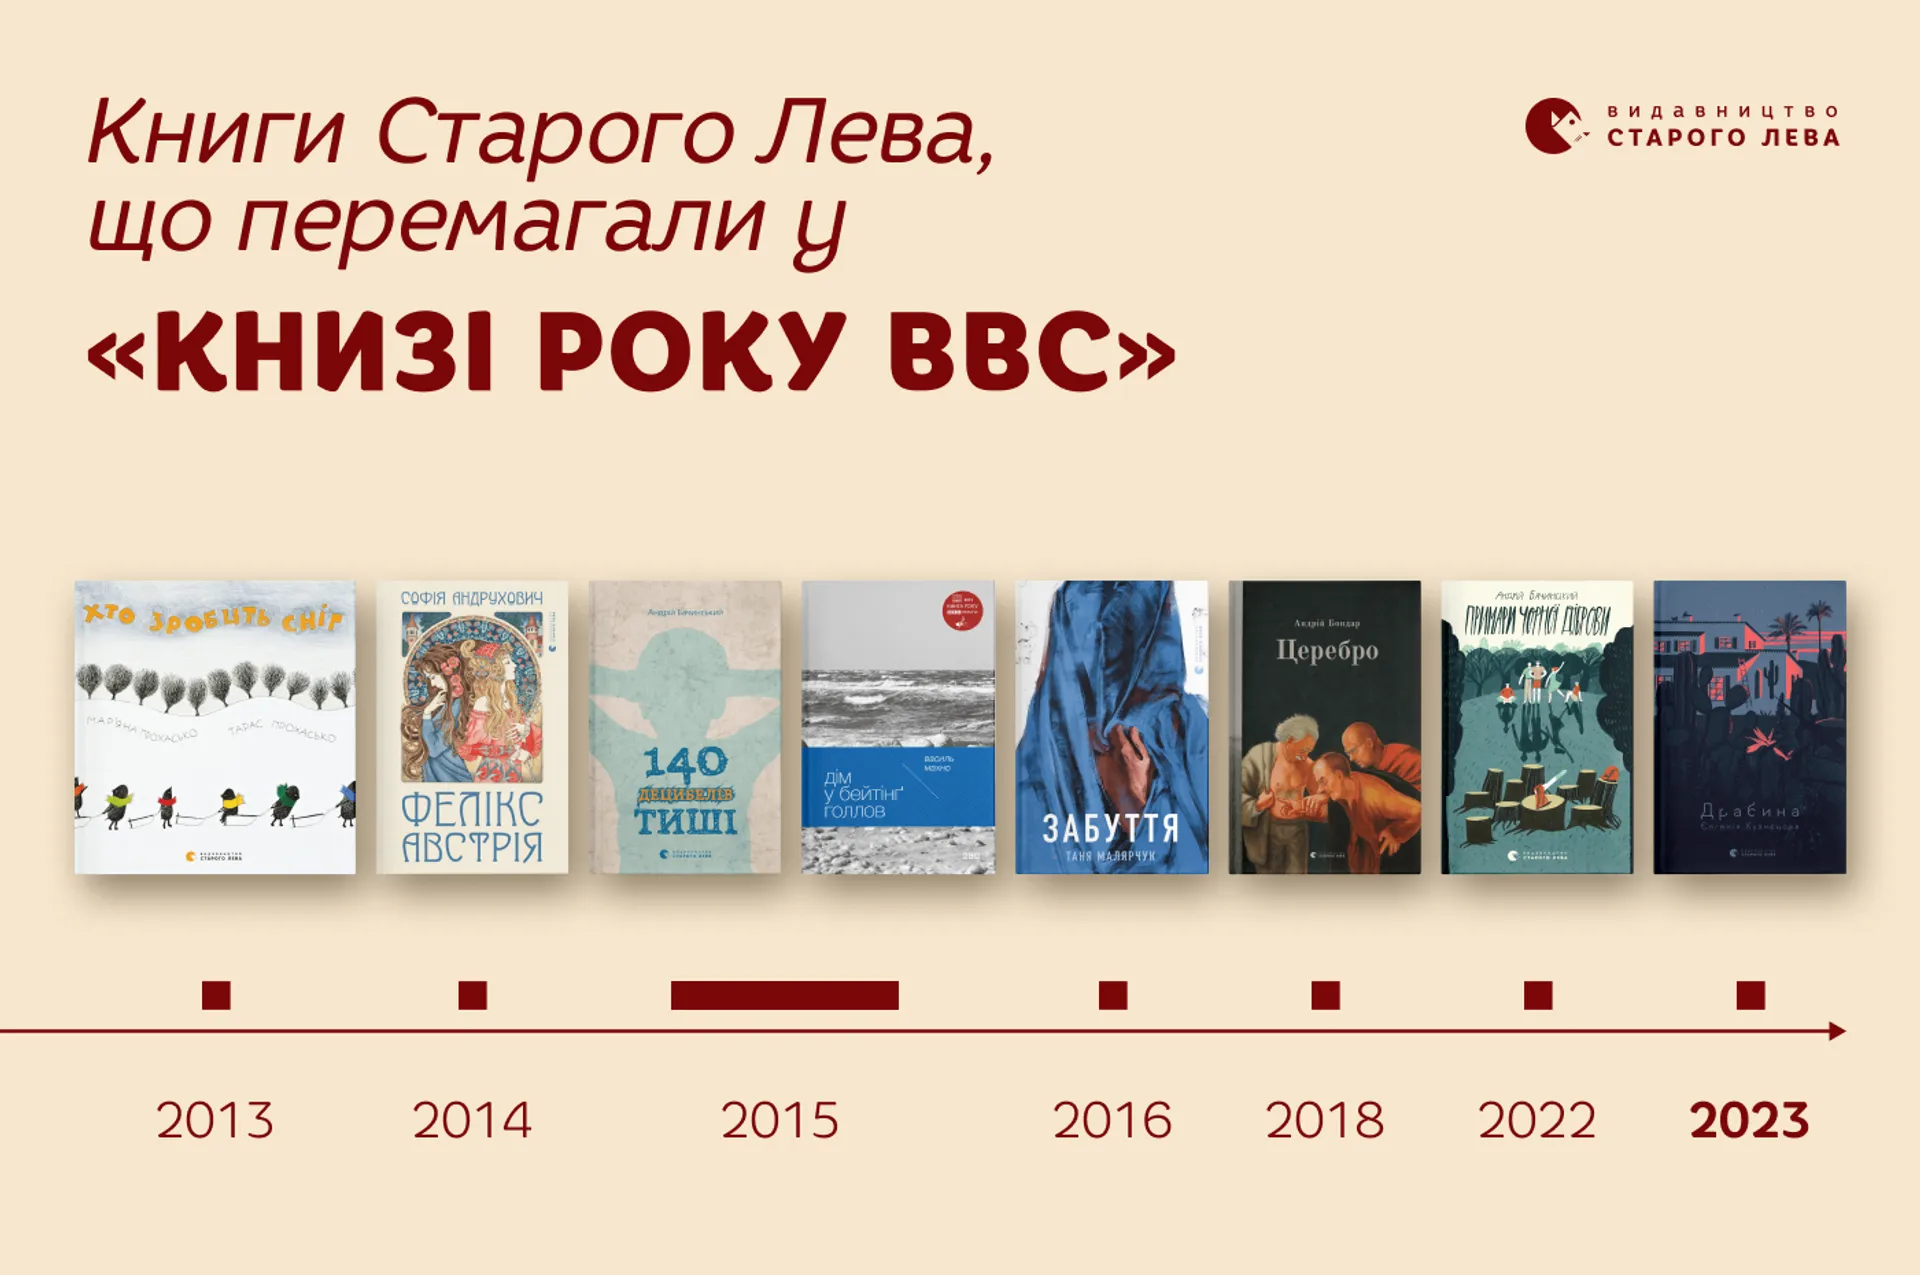 «Драбина» та не лише: які книги Старого Лева перемагали у «Книзі року BBC»